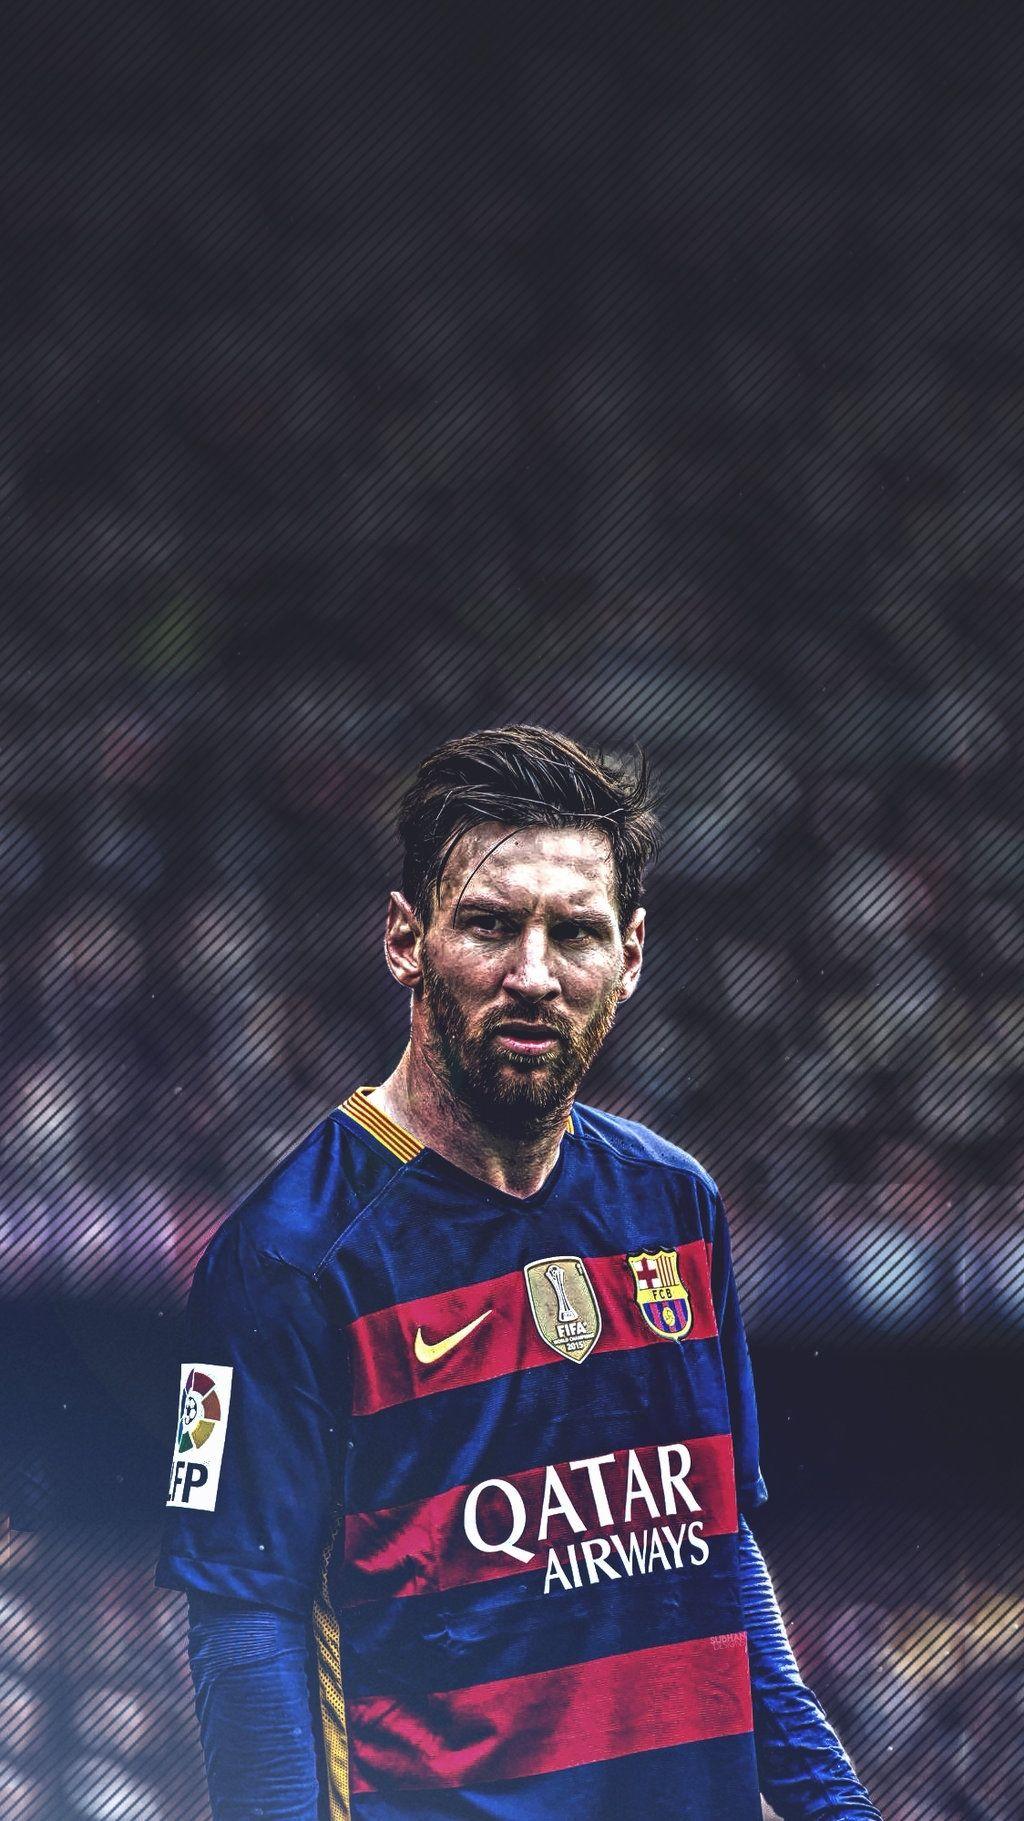 Được rất nhiều người yêu thích trên toàn thế giới, Messi trở thành biểu tượng của bóng đá. Hãy xem hình nền Messi để cảm nhận độ tài của anh chàng này như thế nào.